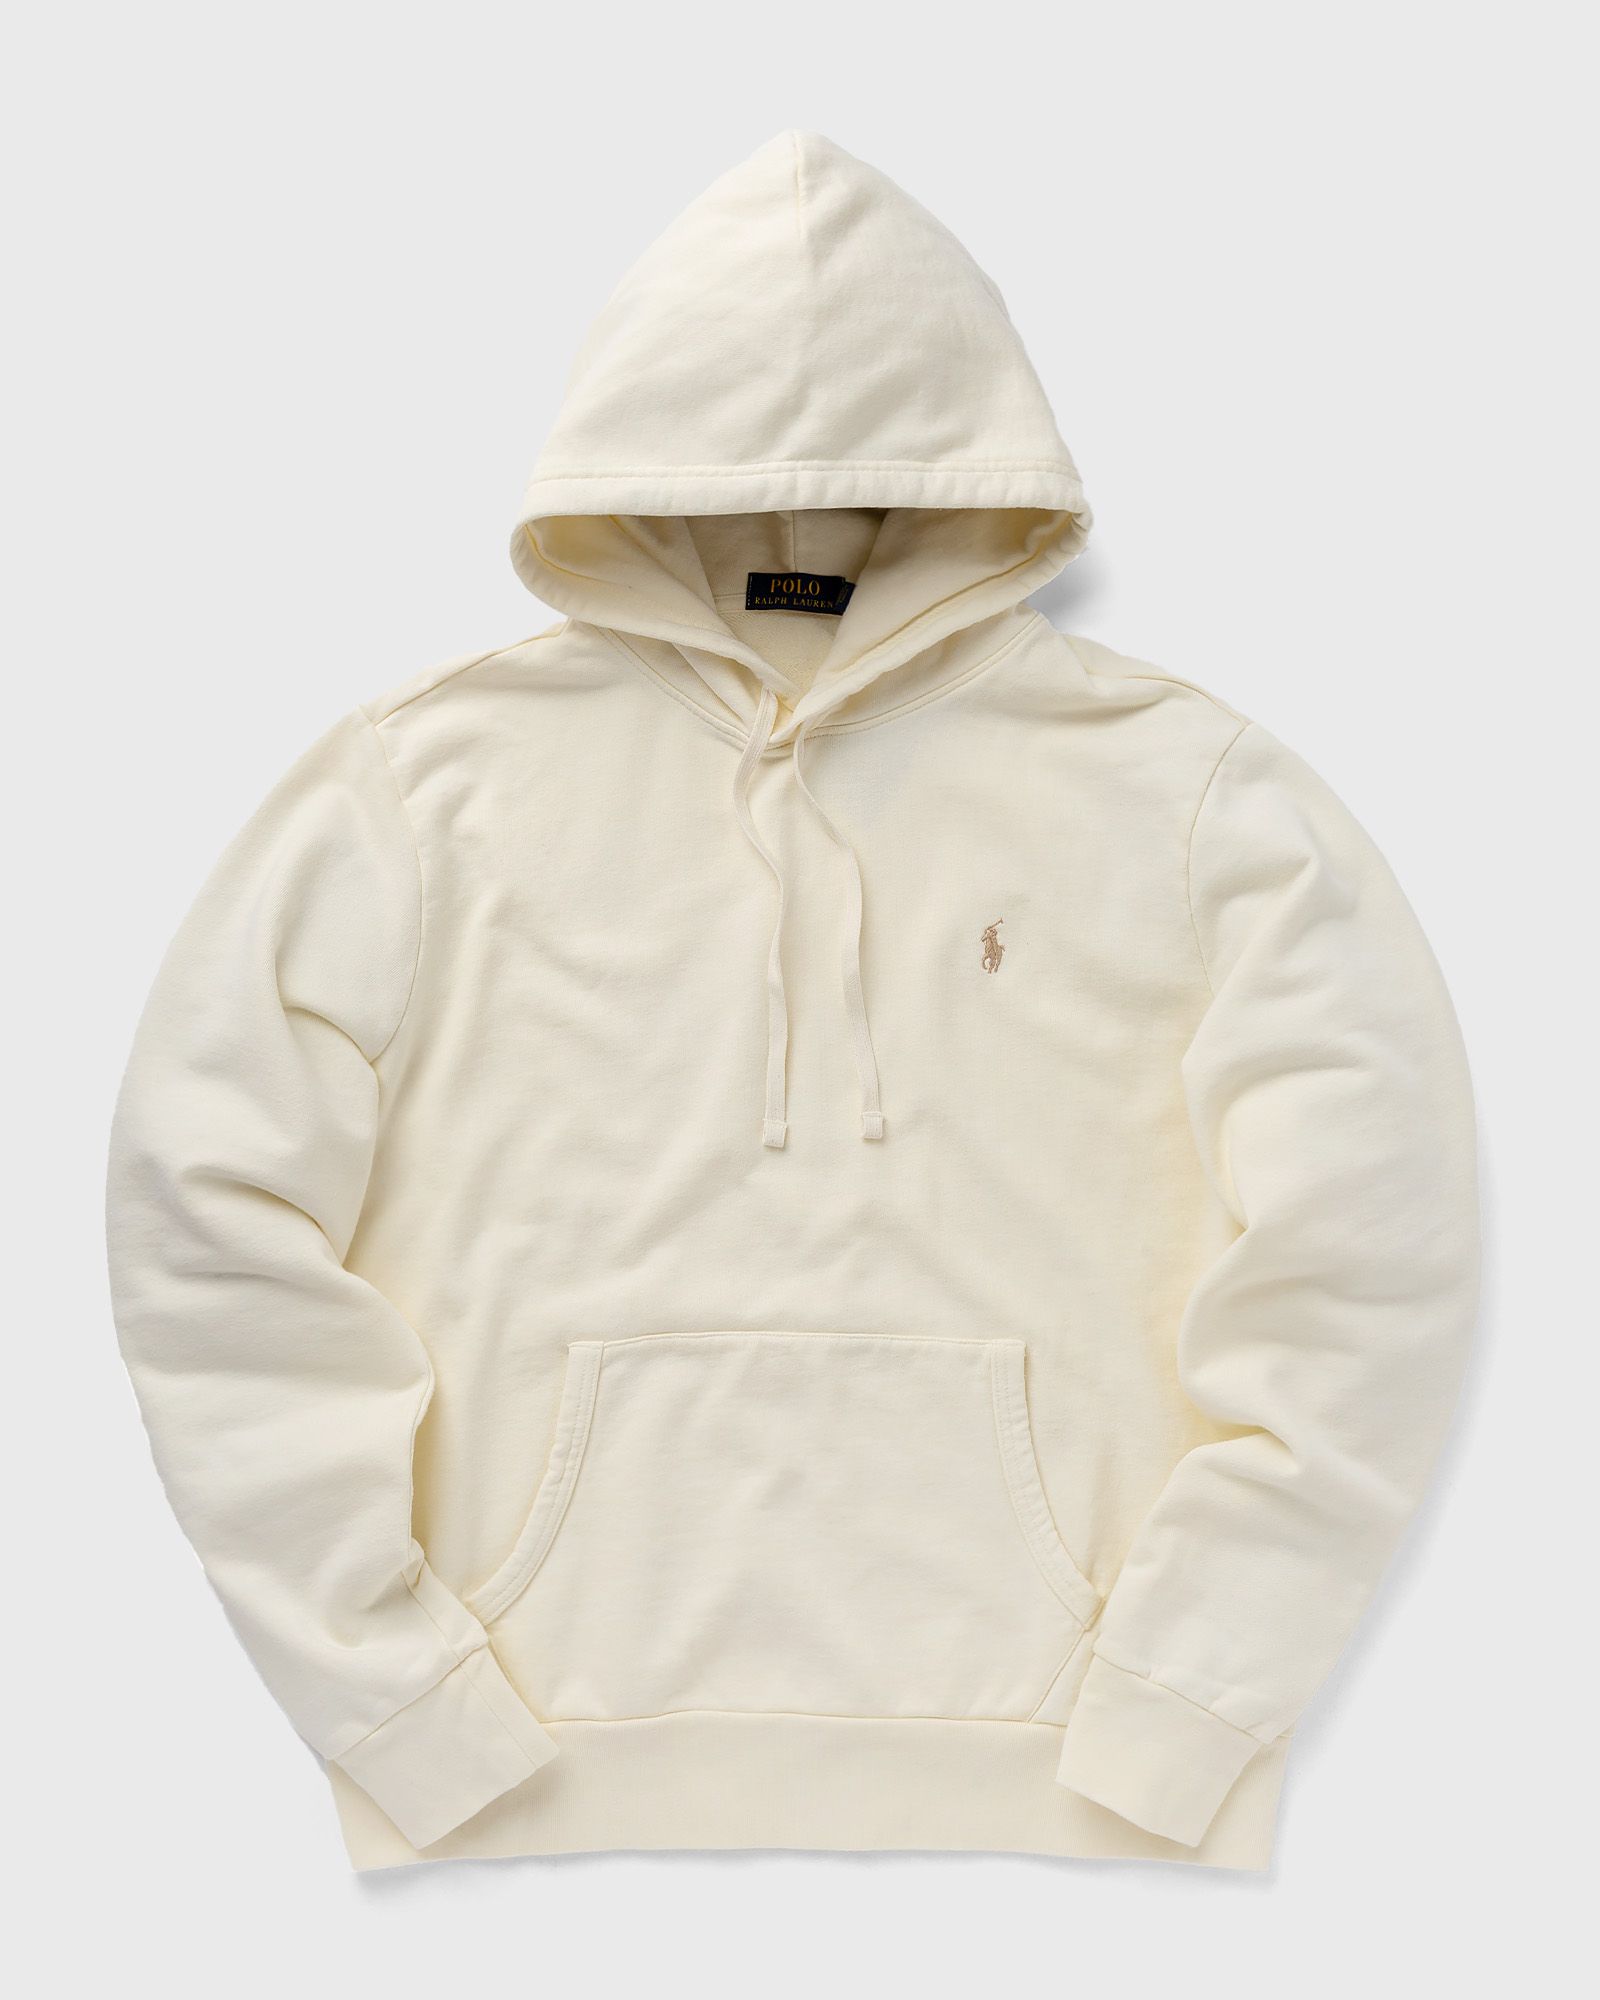 Polo Ralph Lauren - l/s hoodie men hoodies white in größe:xxl